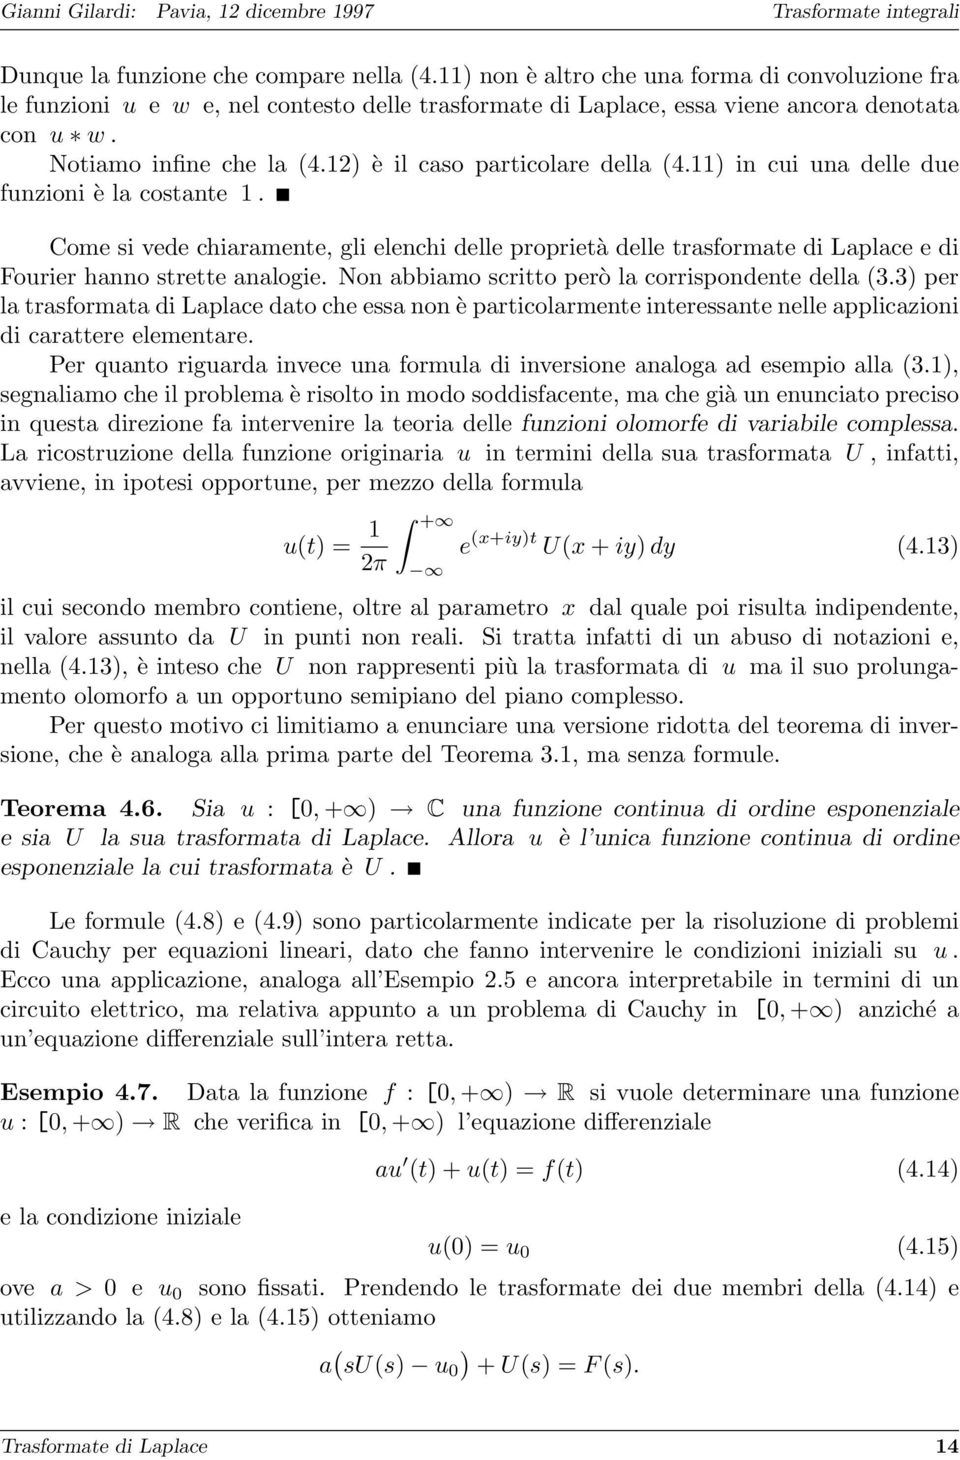 Come si vede chiaramente, gli elenchi delle proprietà delle trasformate di Laplace e di Fourier hanno strette analogie. Non abbiamo scritto però la corrispondente della (3.